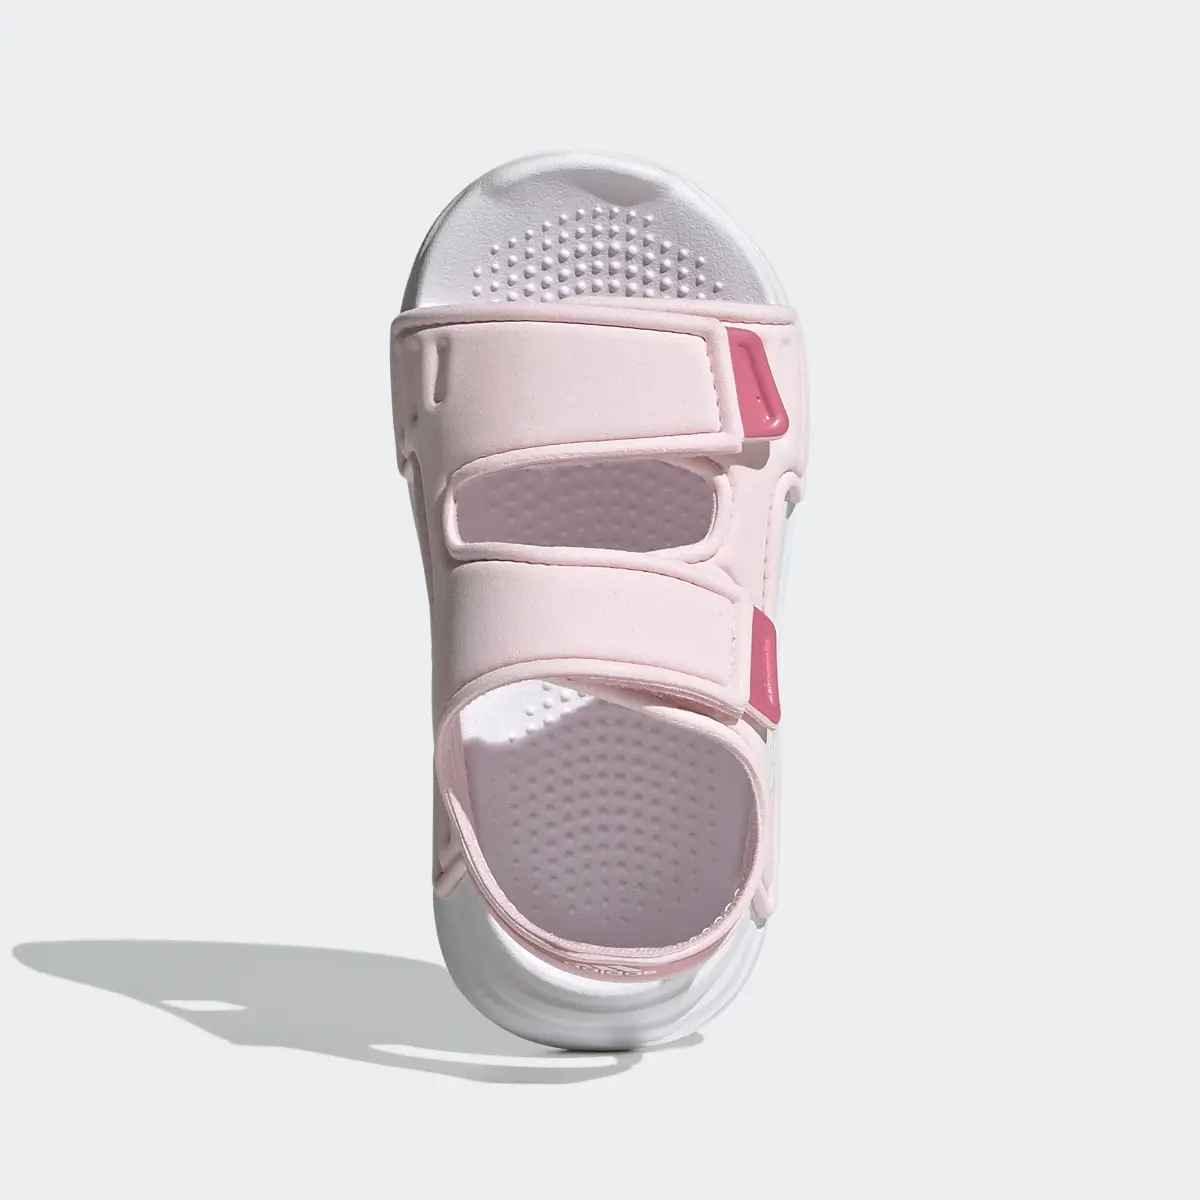 Adidas Altaswim Sandals. 3